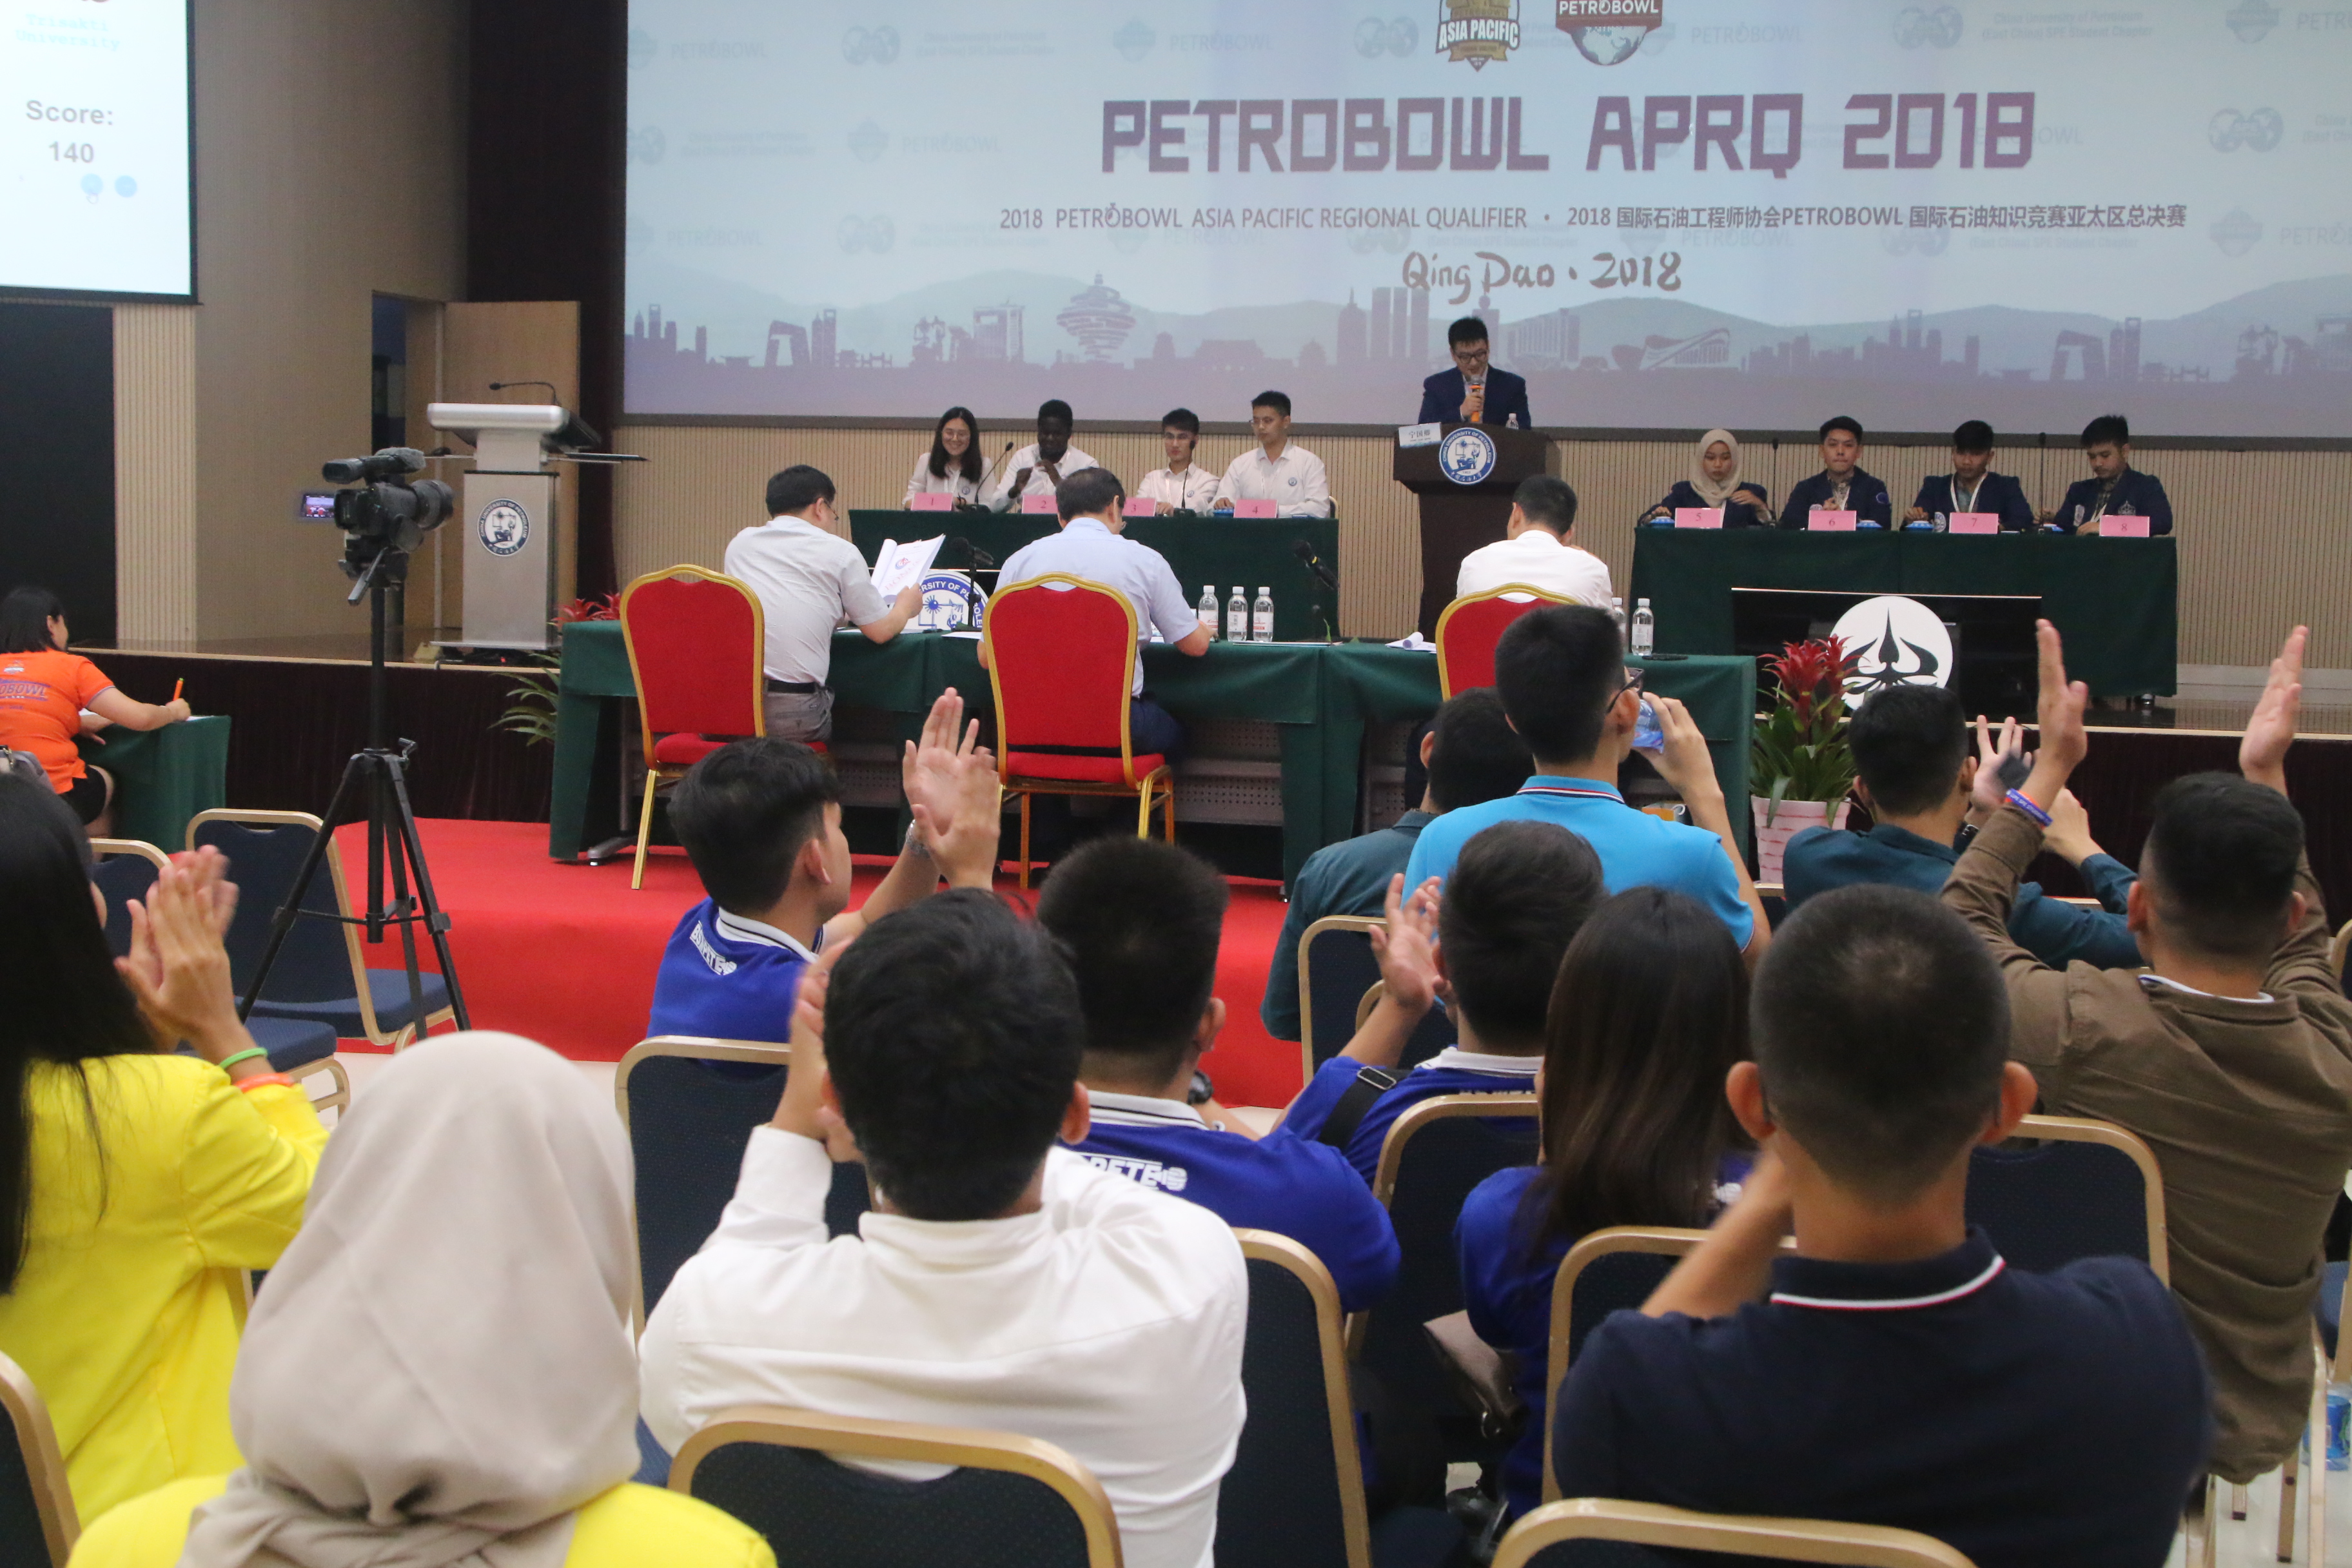 2018年，我校SPE学生分会首次举办Petrobowl国际石油工程知识竞赛亚太区决赛，这也是该赛事第一次在中国举办，2018 SPE主席Darcy Spady先生到访我校并出席颁奖典礼